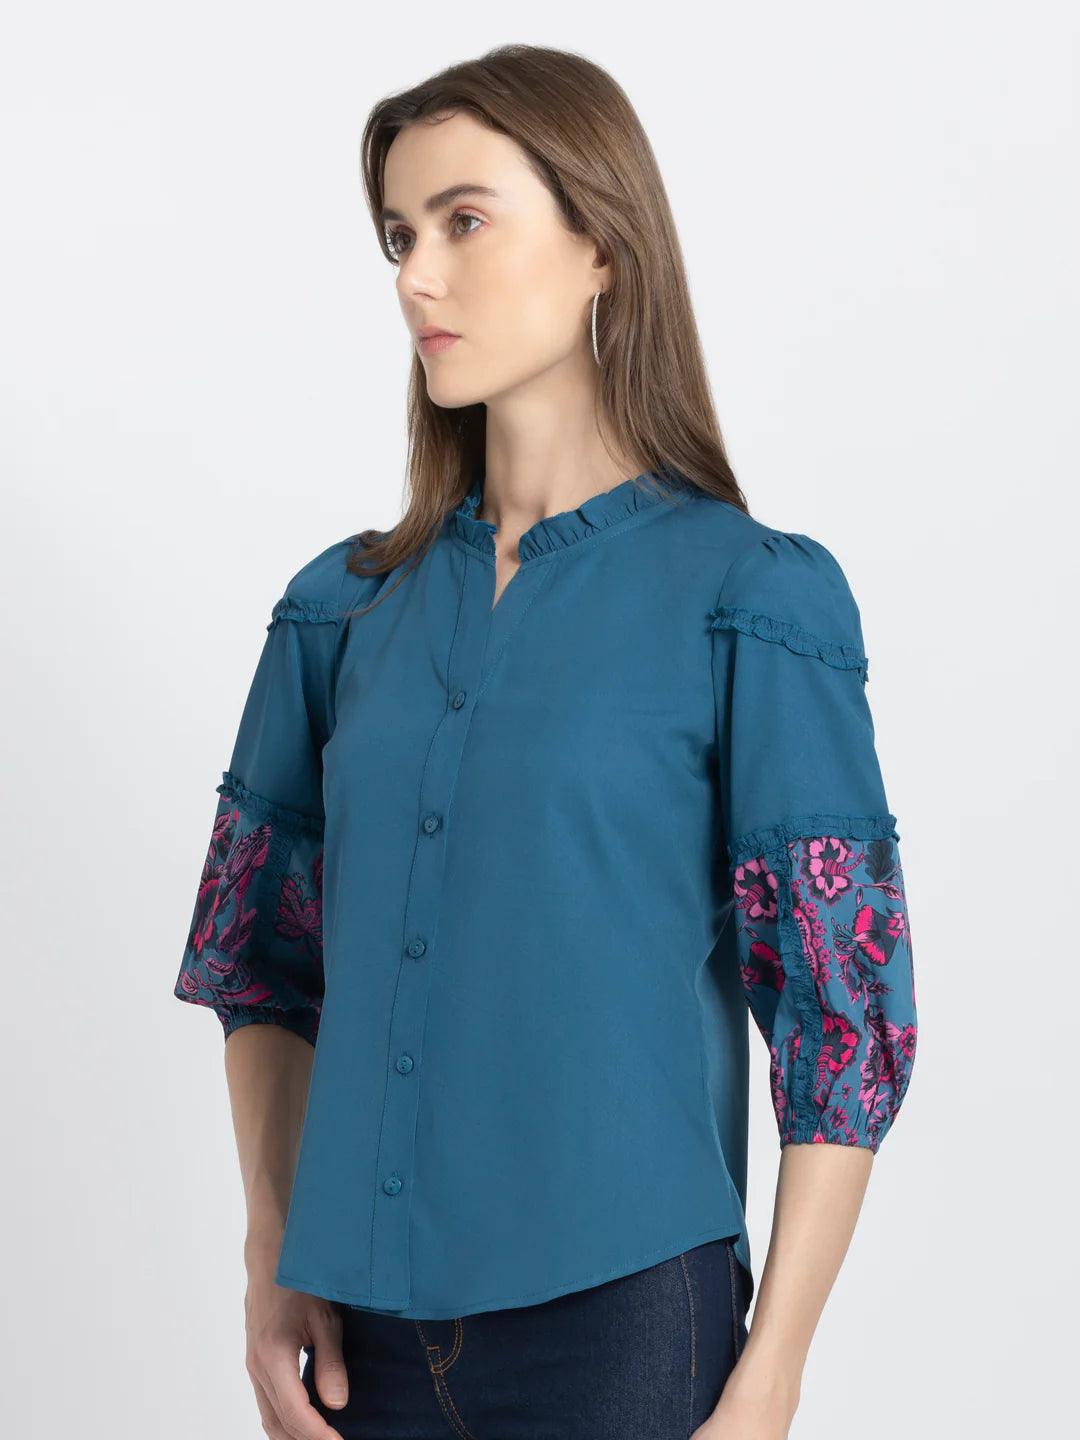 Blue Button-Down Shirt | Chic Blue Button-Down Shirt